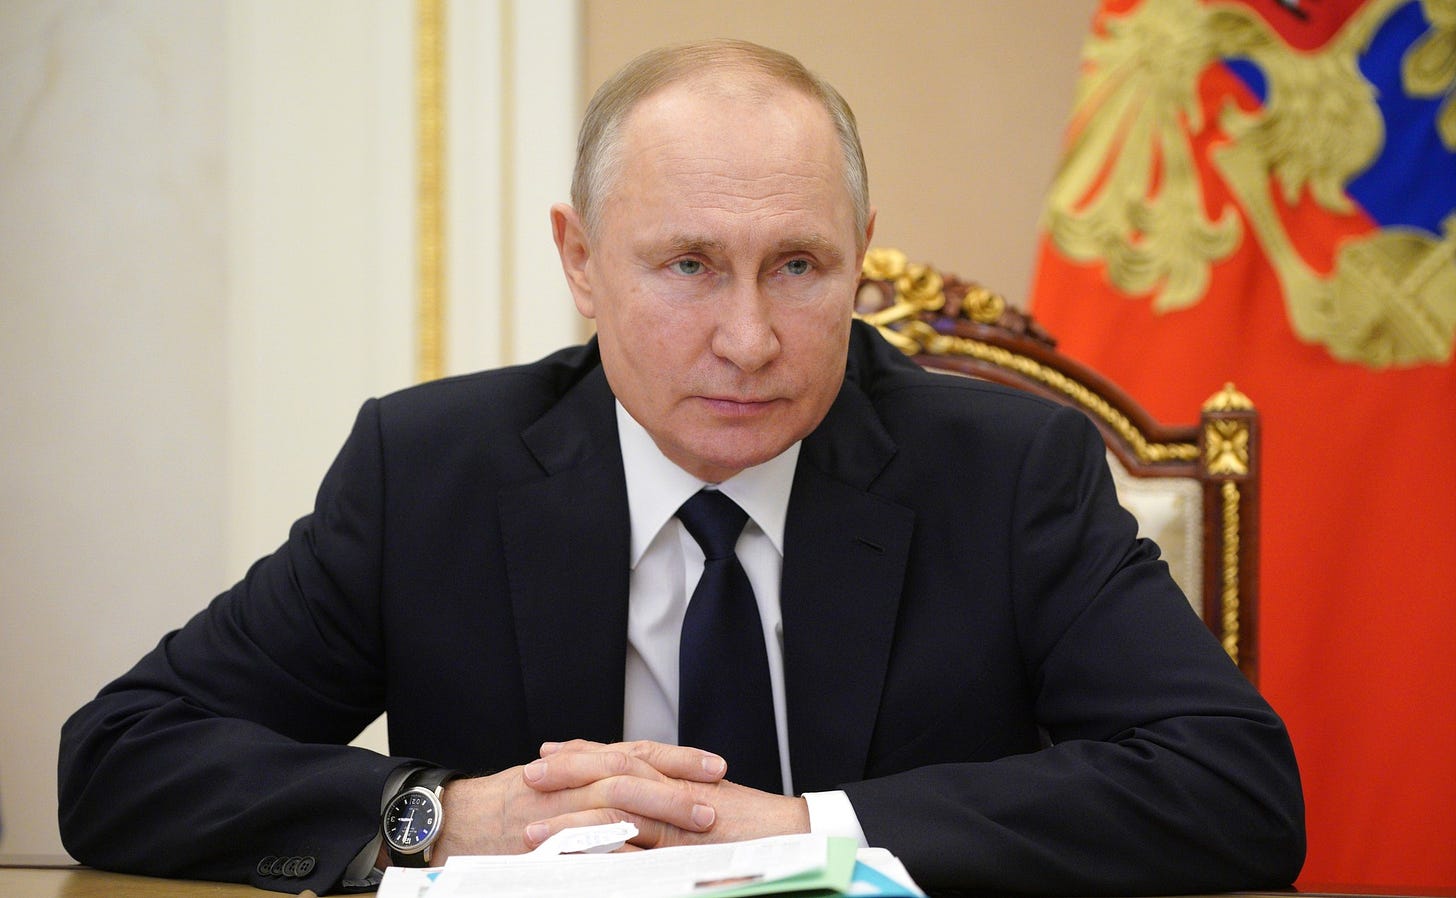 File:Vladimir Putin (07-04-2021).jpg - Wikimedia Commons